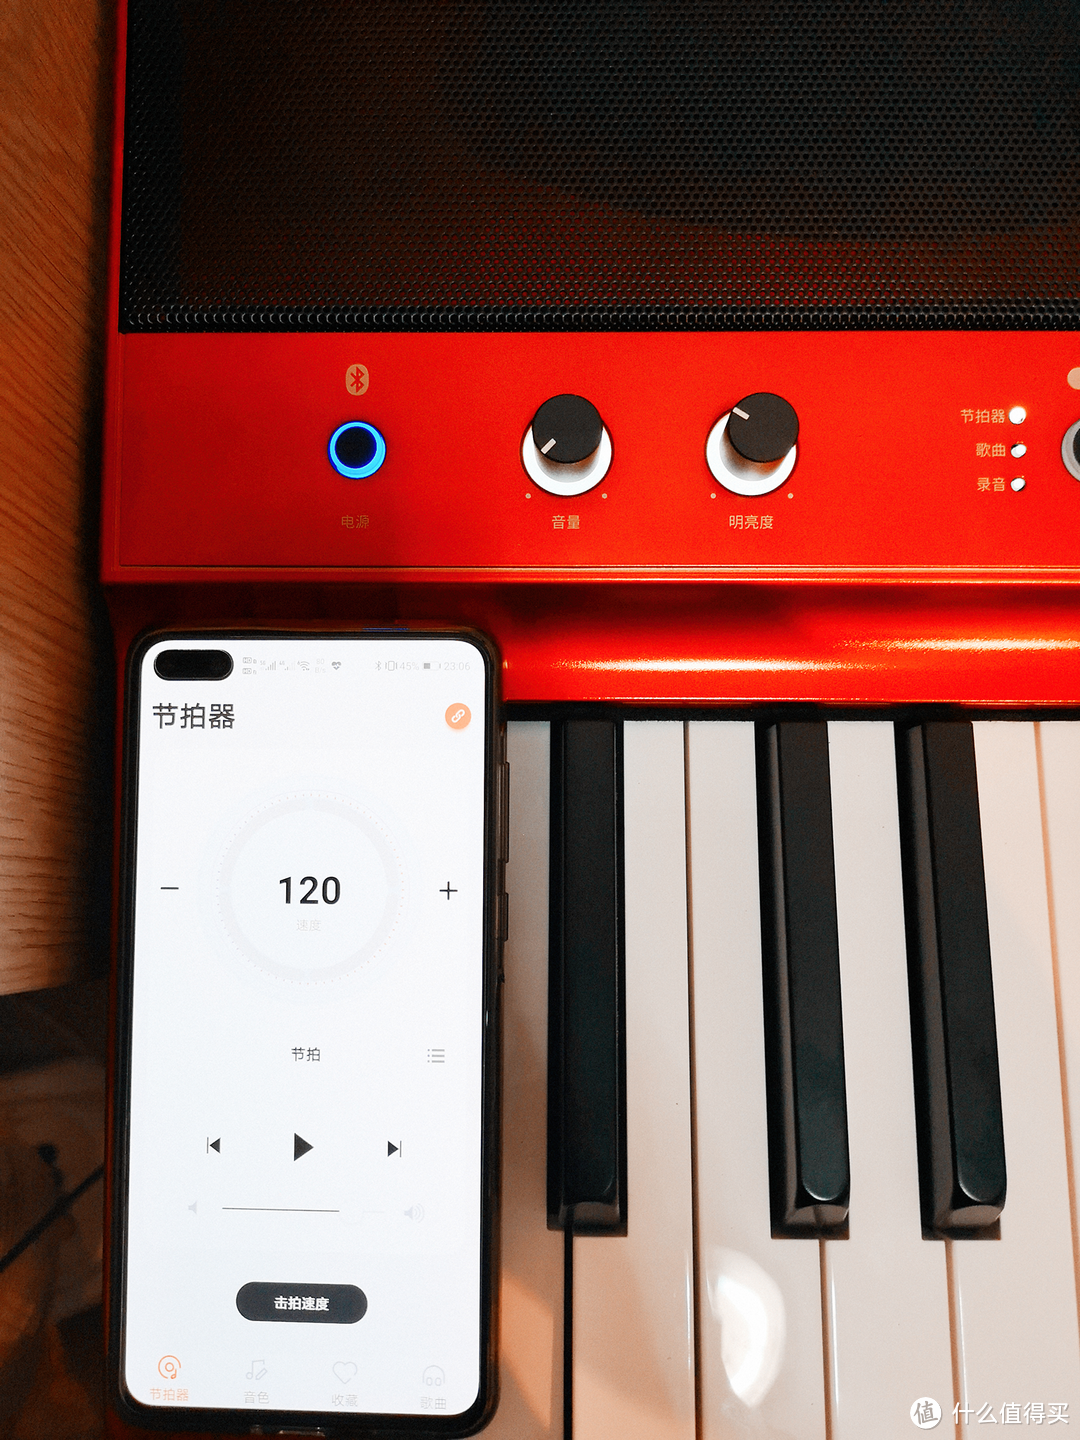 MEDELI美得理新款SAP200国产电钢琴详细评测，附试弹视频